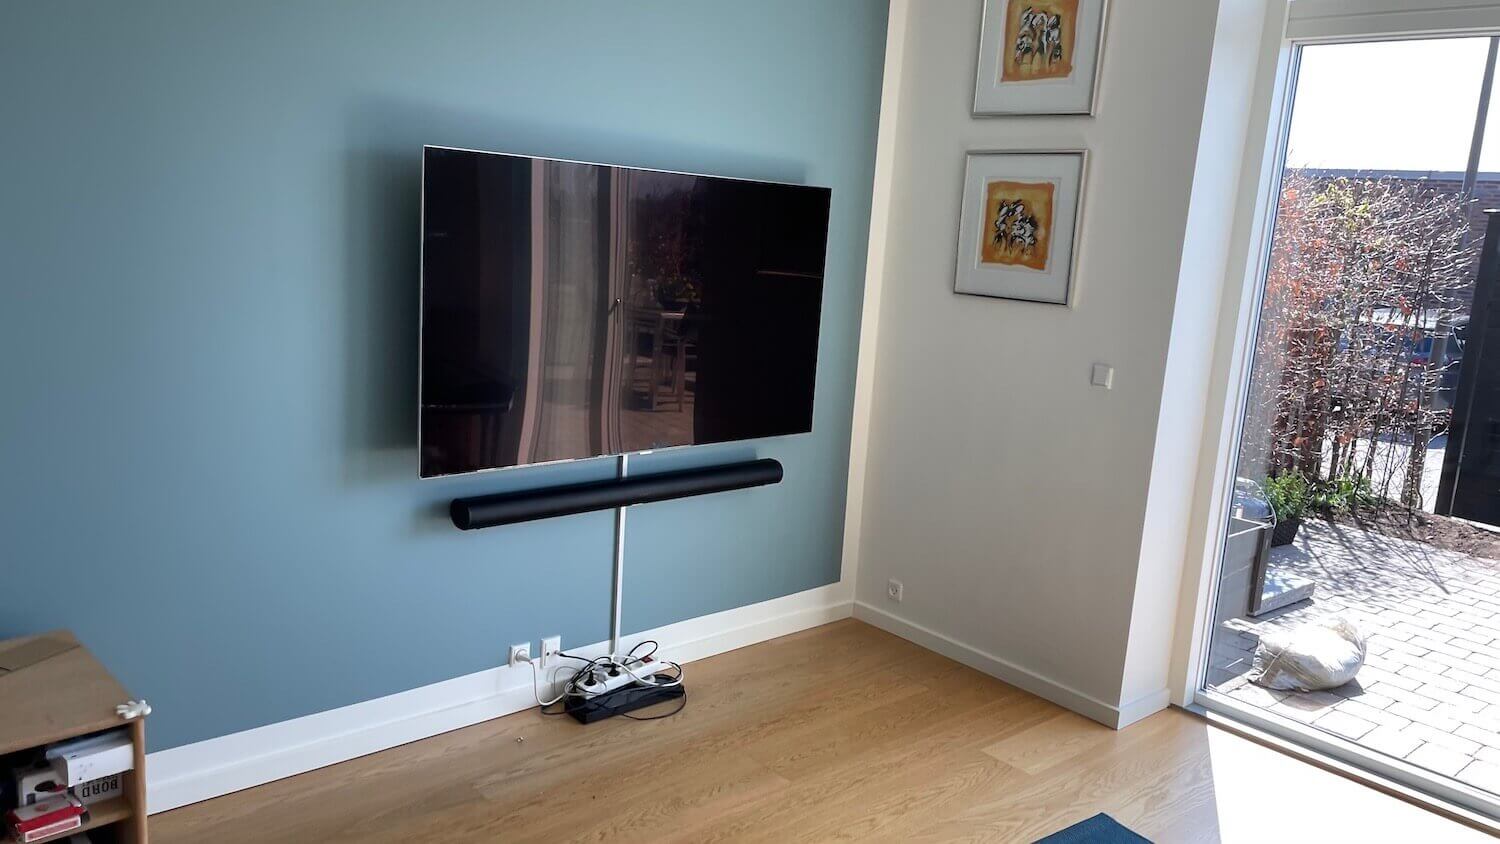 Opsætning af Sonos soundbar, kabelbakke og 55" Samsung TV på vægbeslag med drejefunktion - TV